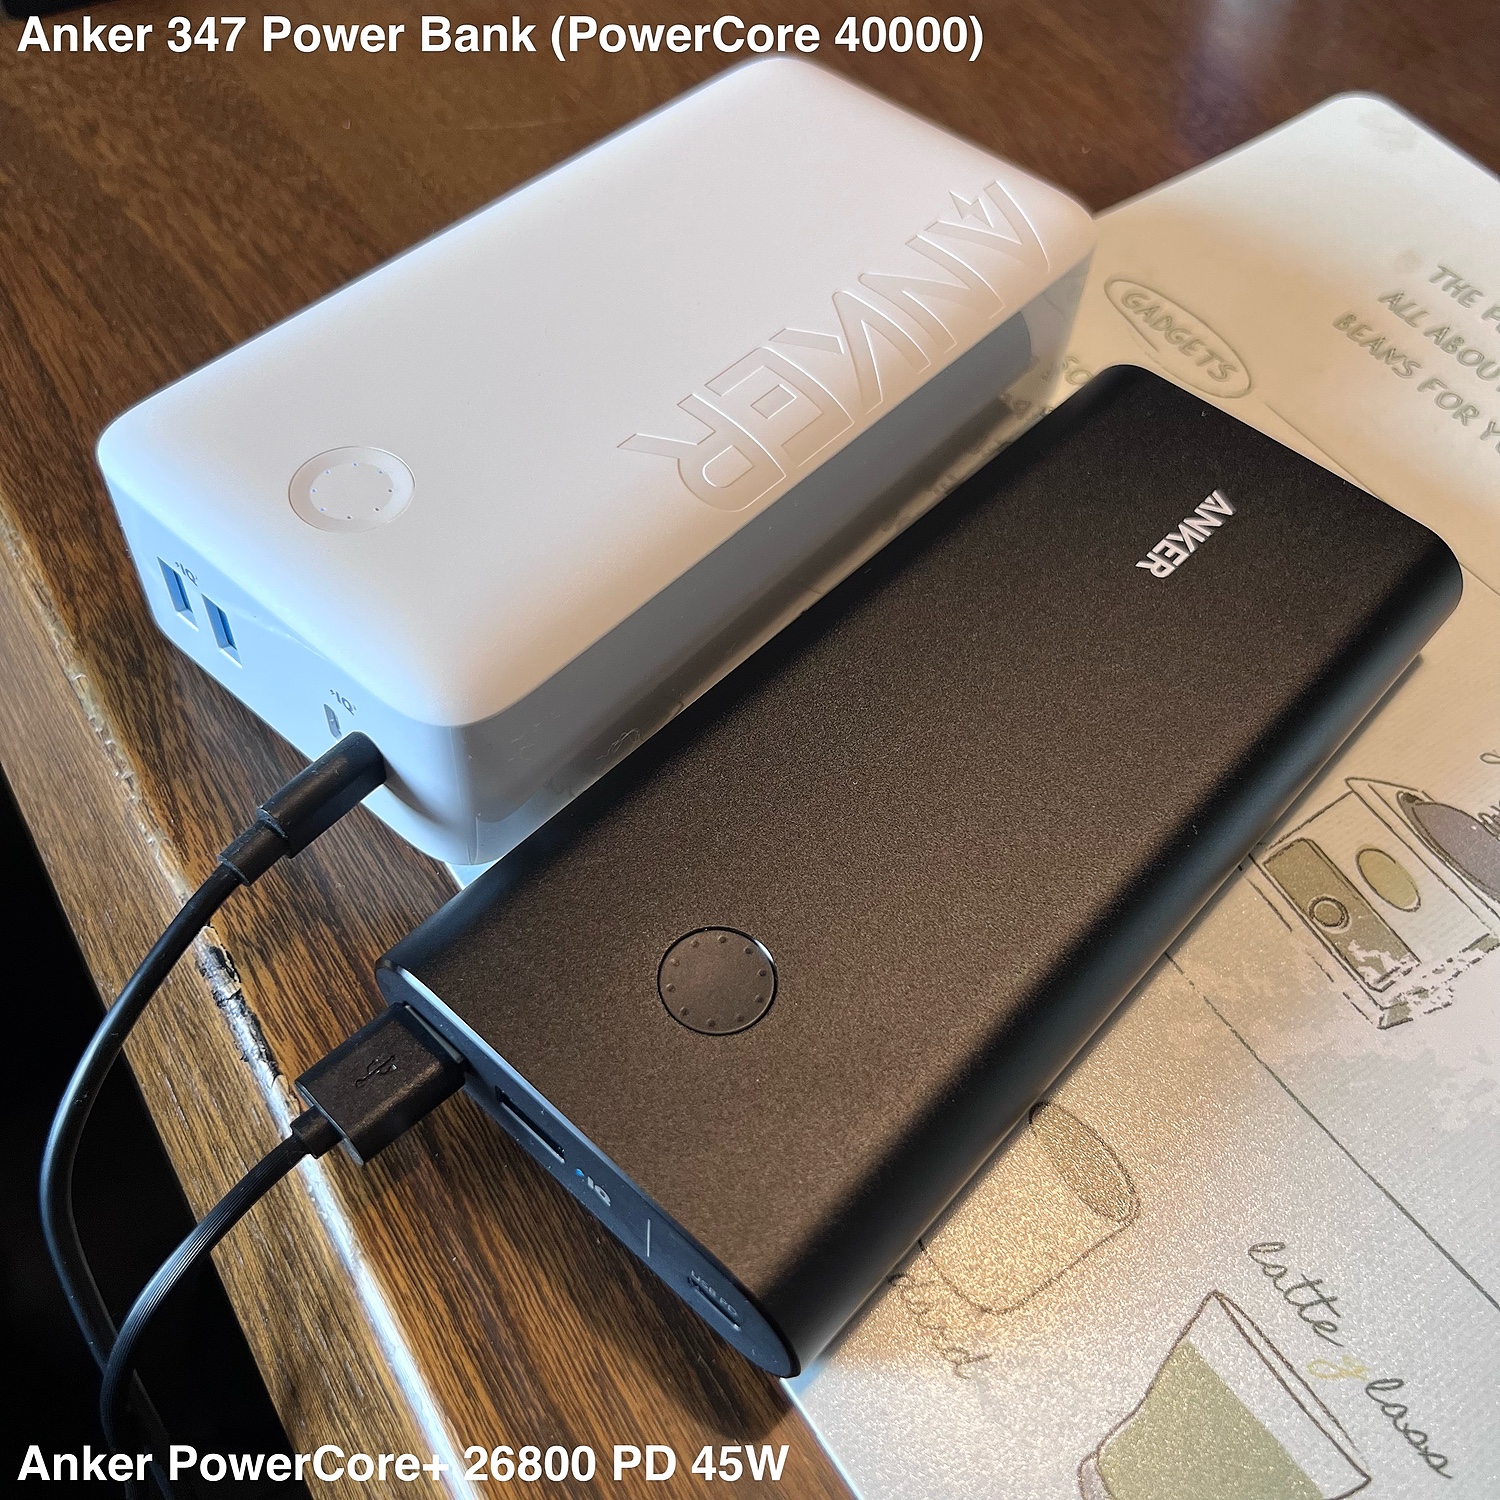 買物 Anker 347 Power Bank PowerCore 40000